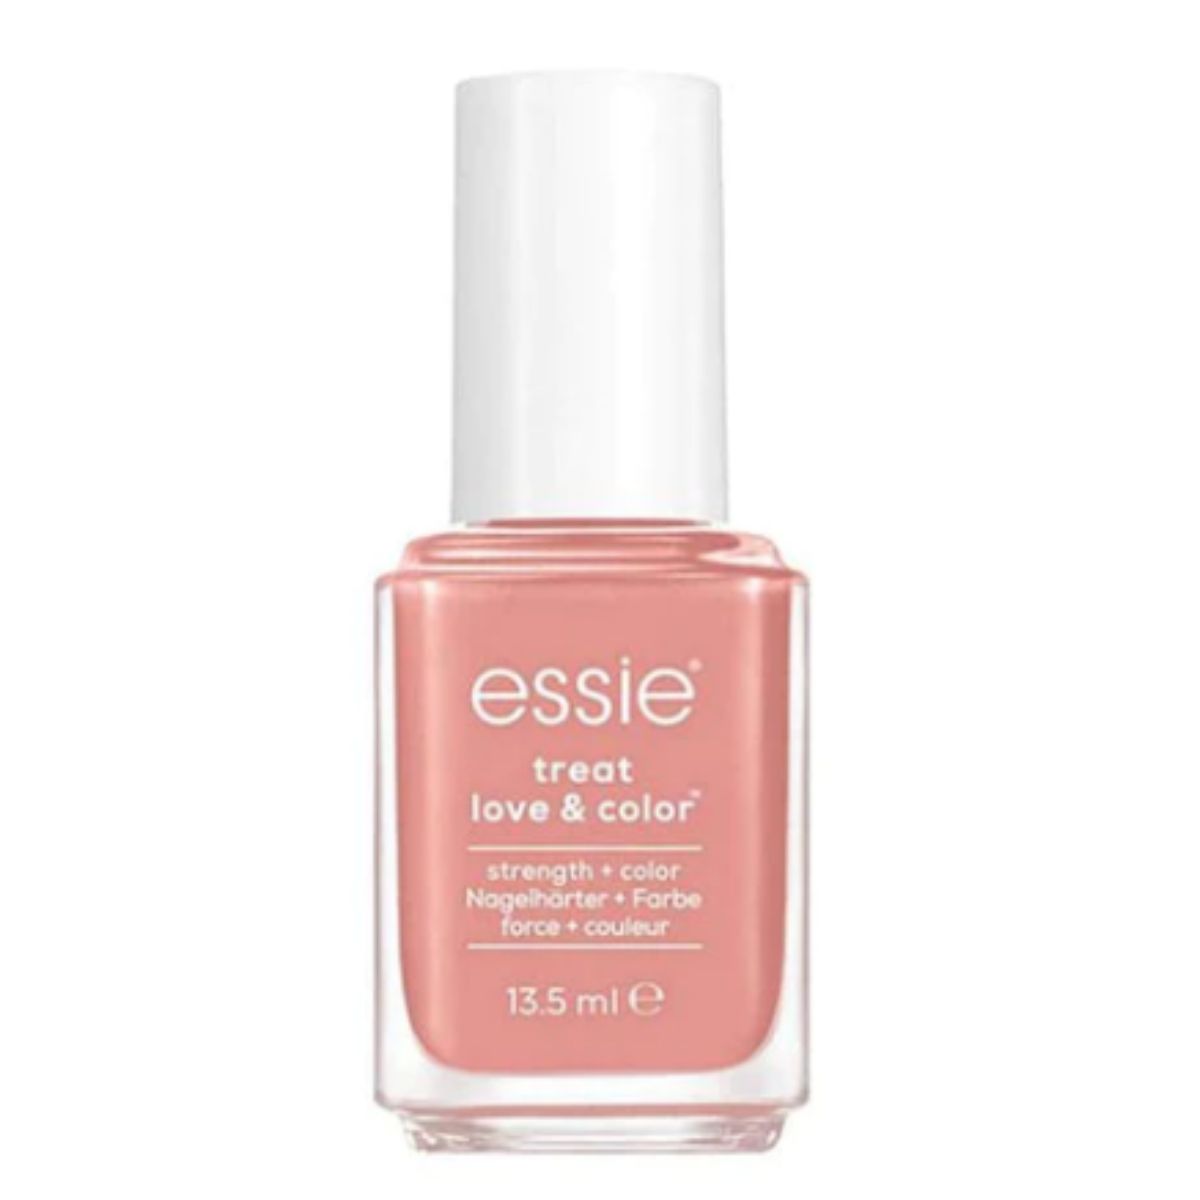 Essie Treat Love Colour Nail Polish